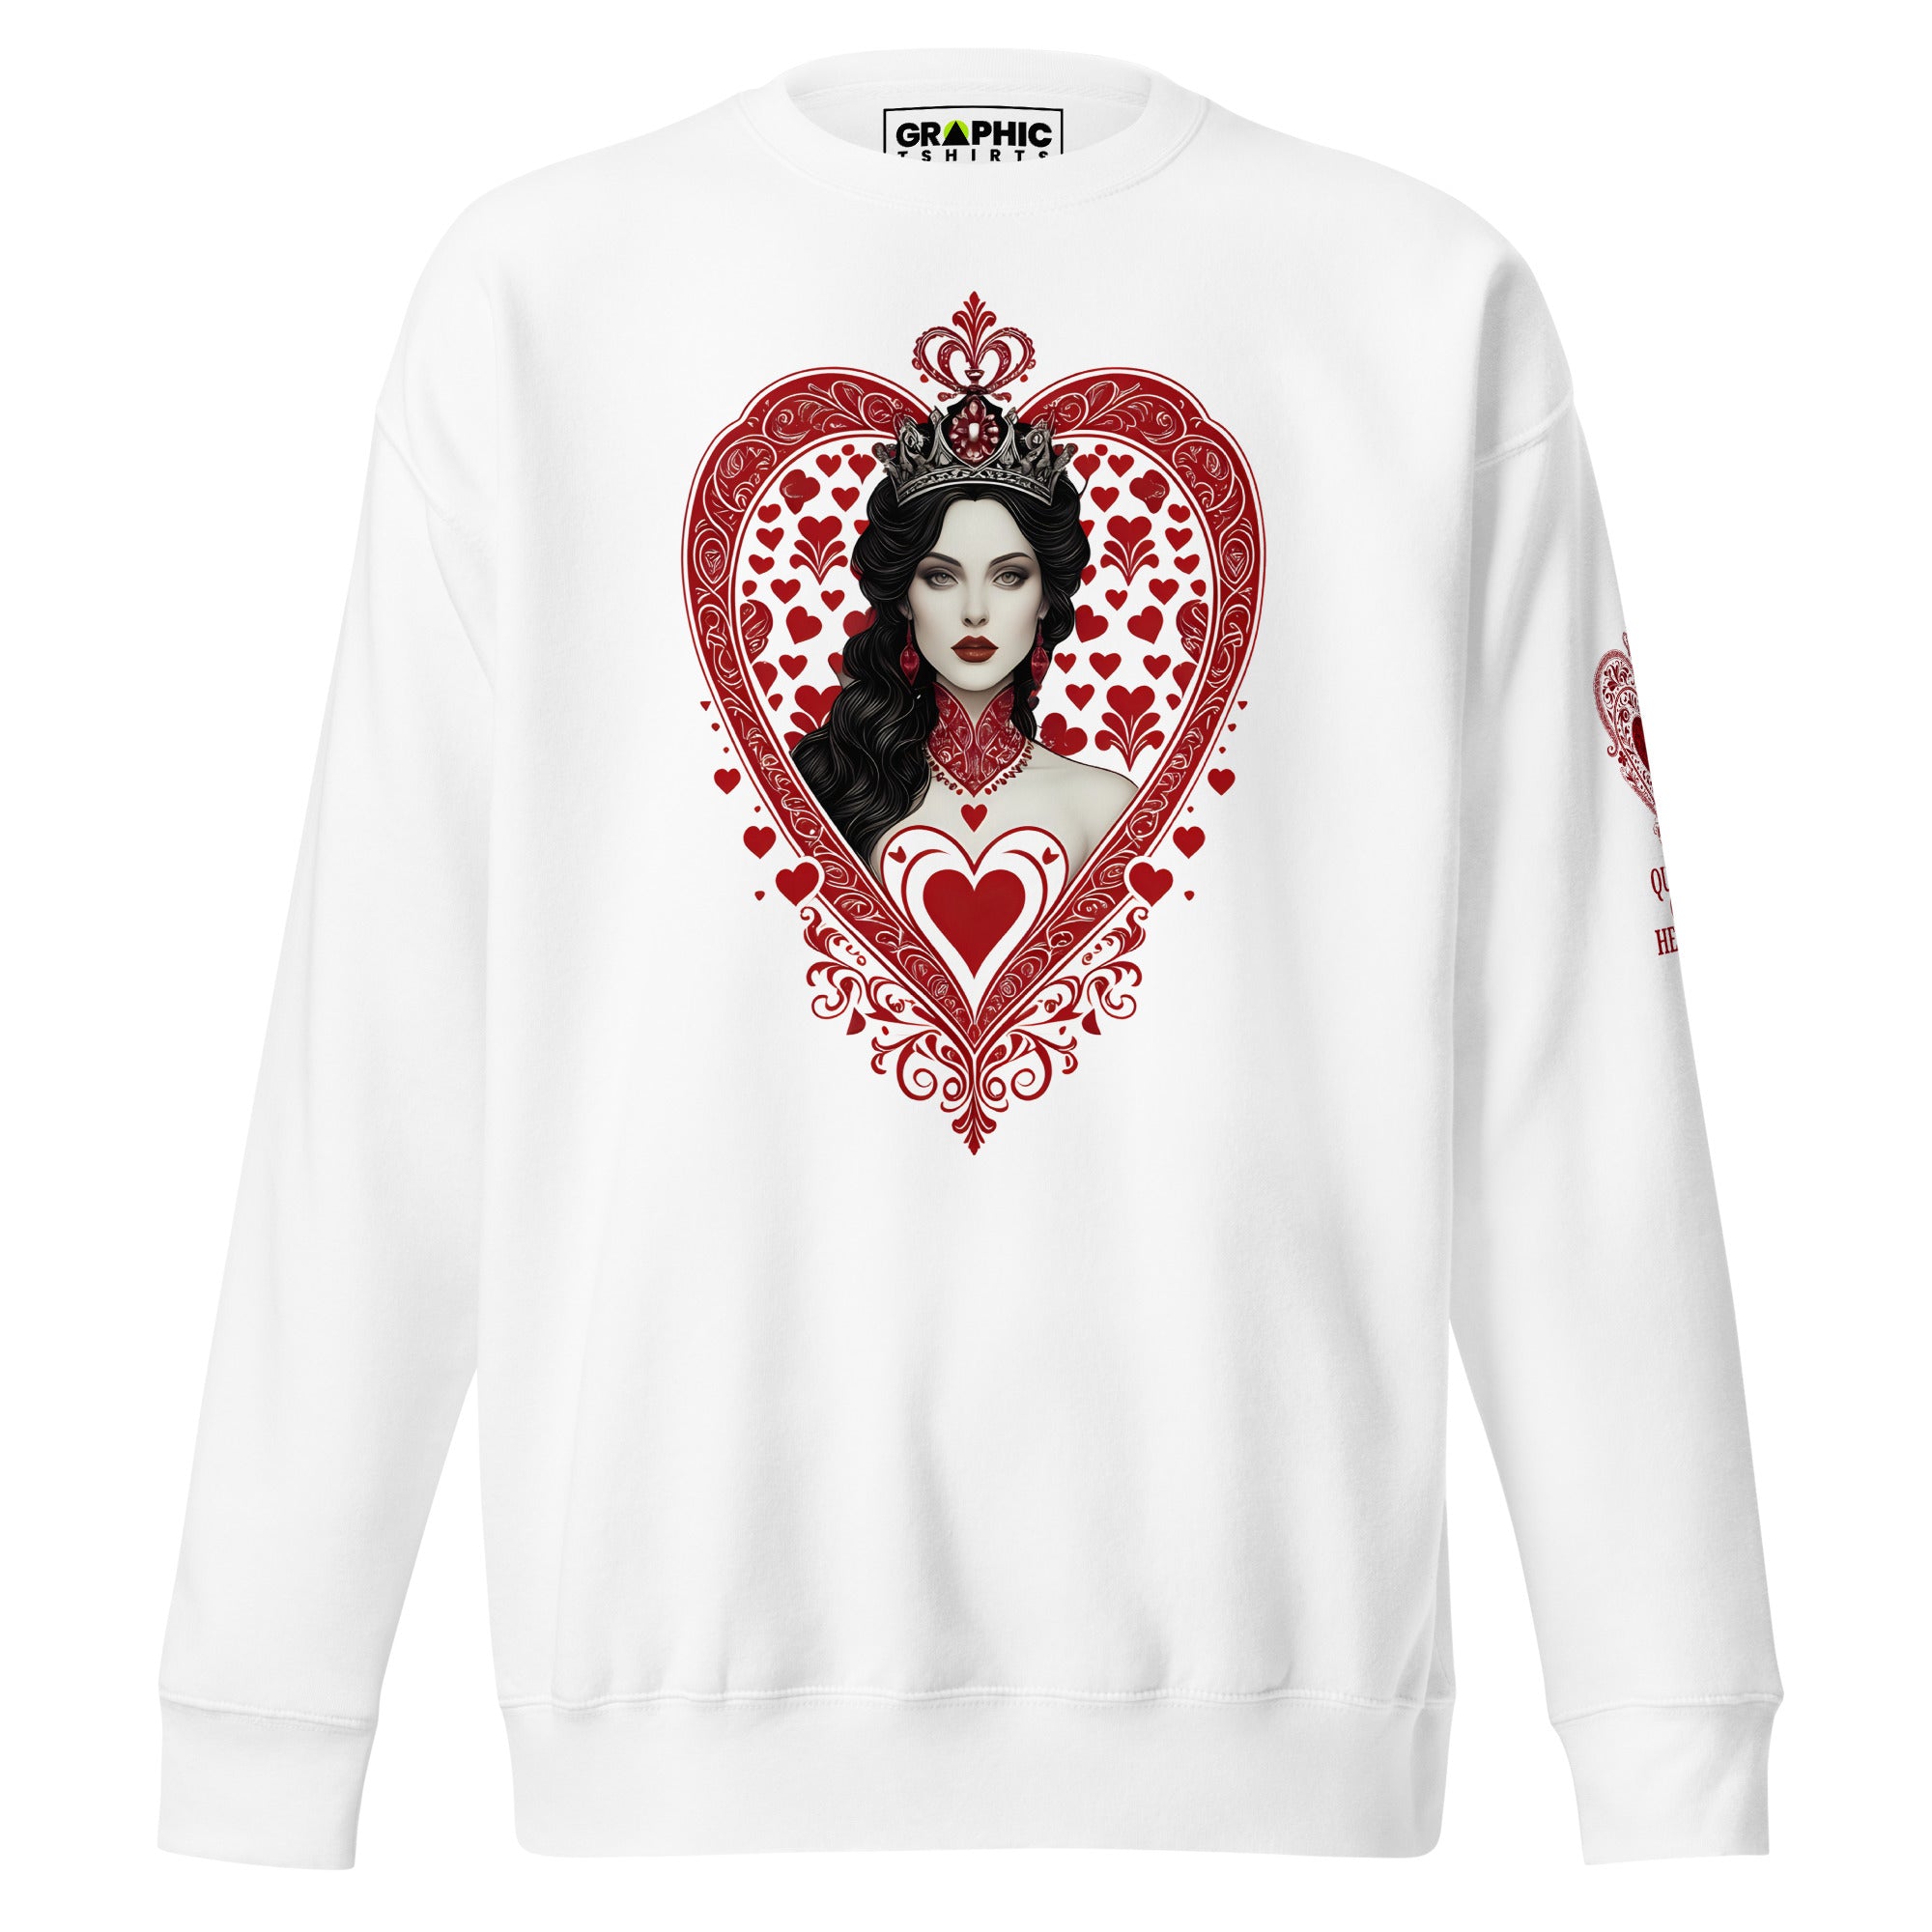 Unisex Premium Sweatshirt - Queen Of Hearts Series v.5